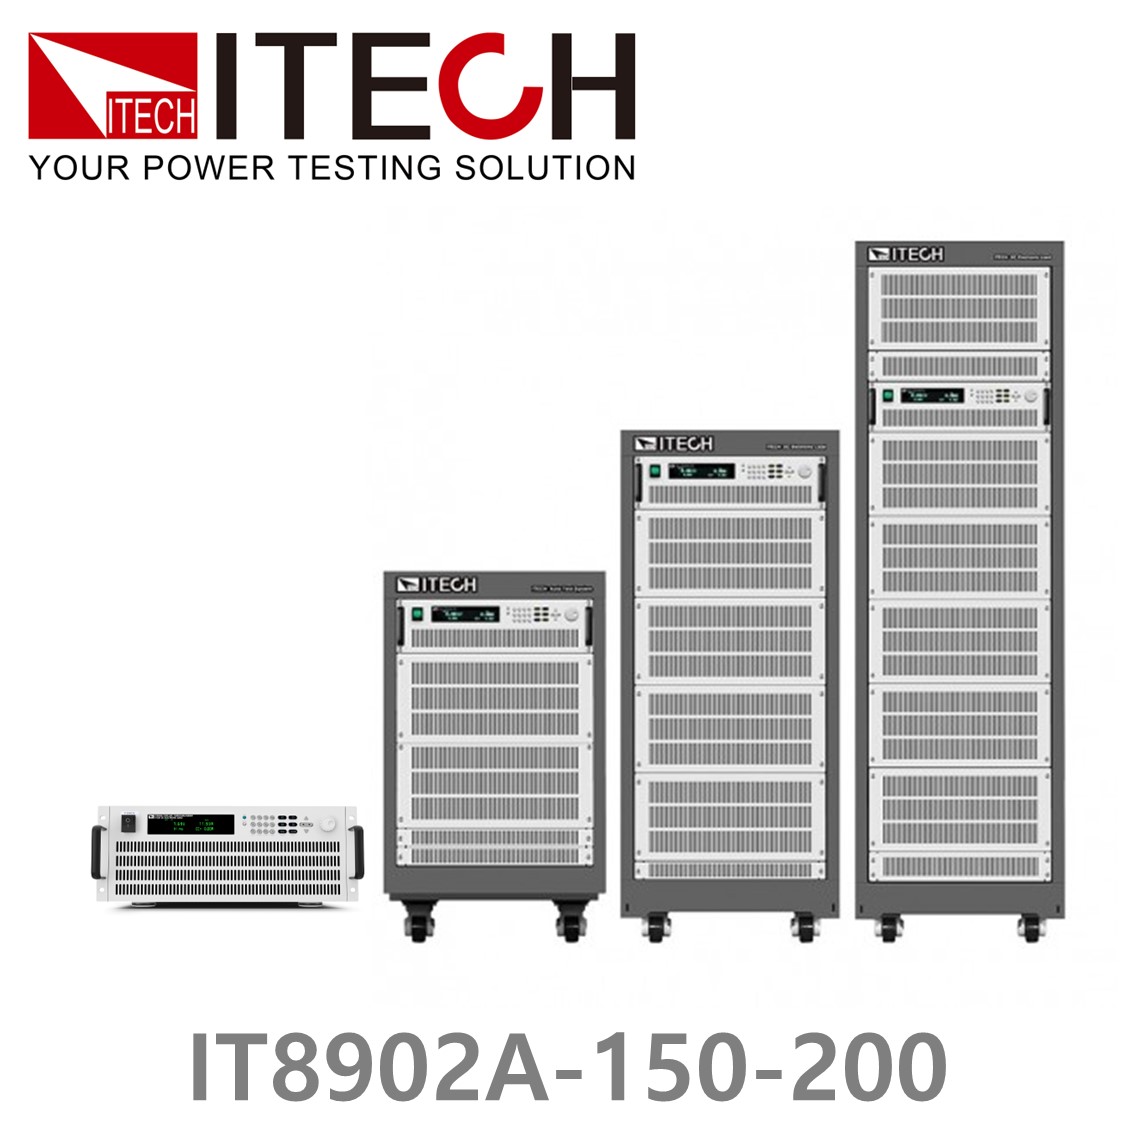 [ ITECH ] IT8902A-150-200  고성능 고전력 DC 전자로드 150V/200A/2kW (4U)